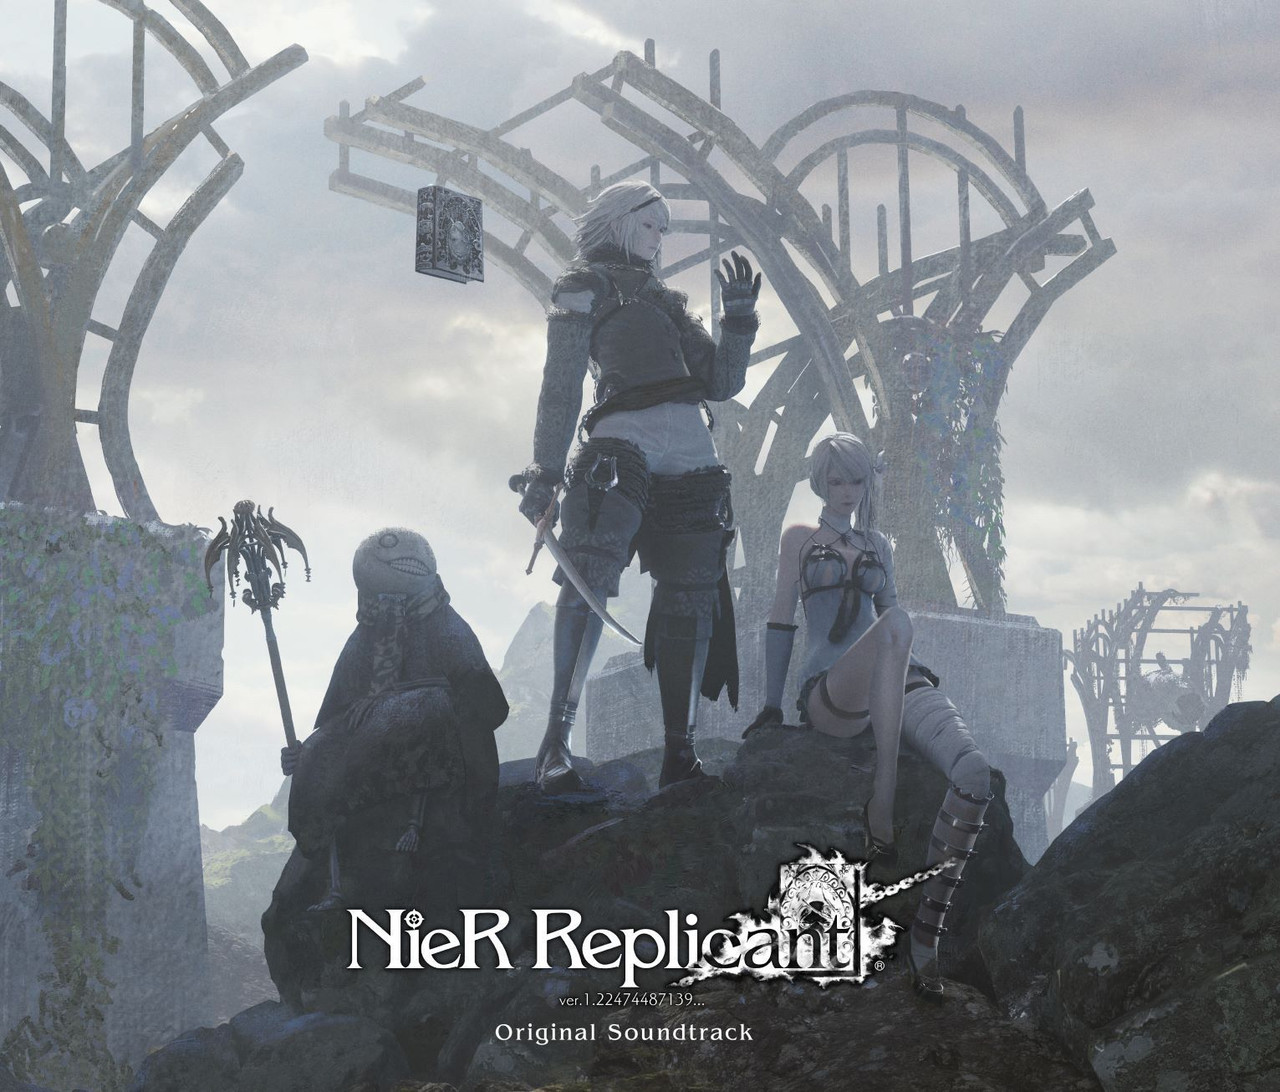 ソニーミュージック 帯あり (ゲーム・ミュージック) CD NieR Replicant ver.1.22474487139... Original Soundtrack